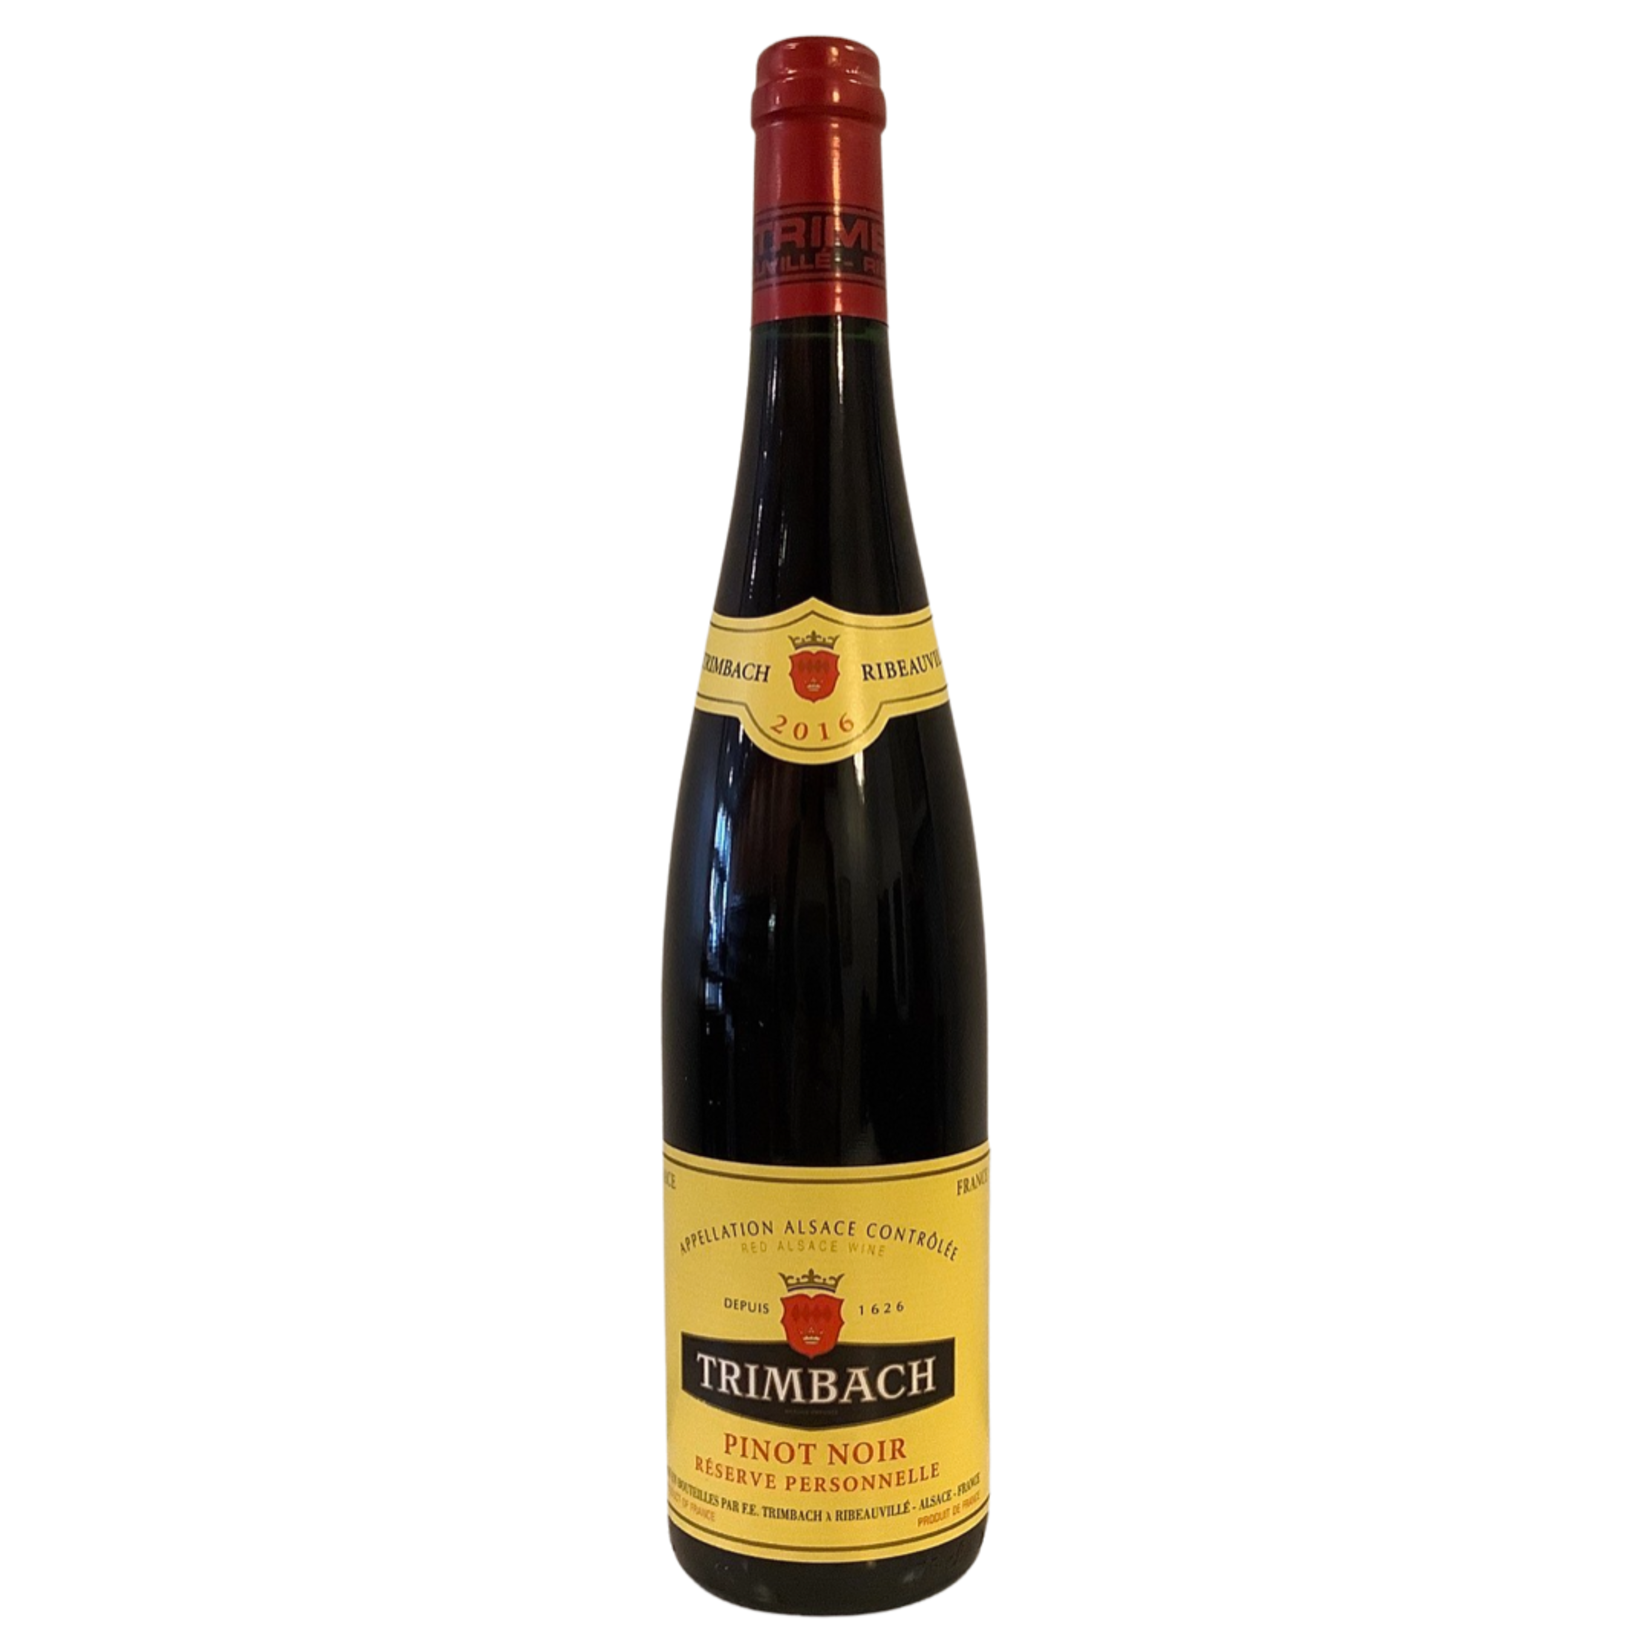 2016 Trimbach Pinot Noir Réserve Personelle, Alsace | France